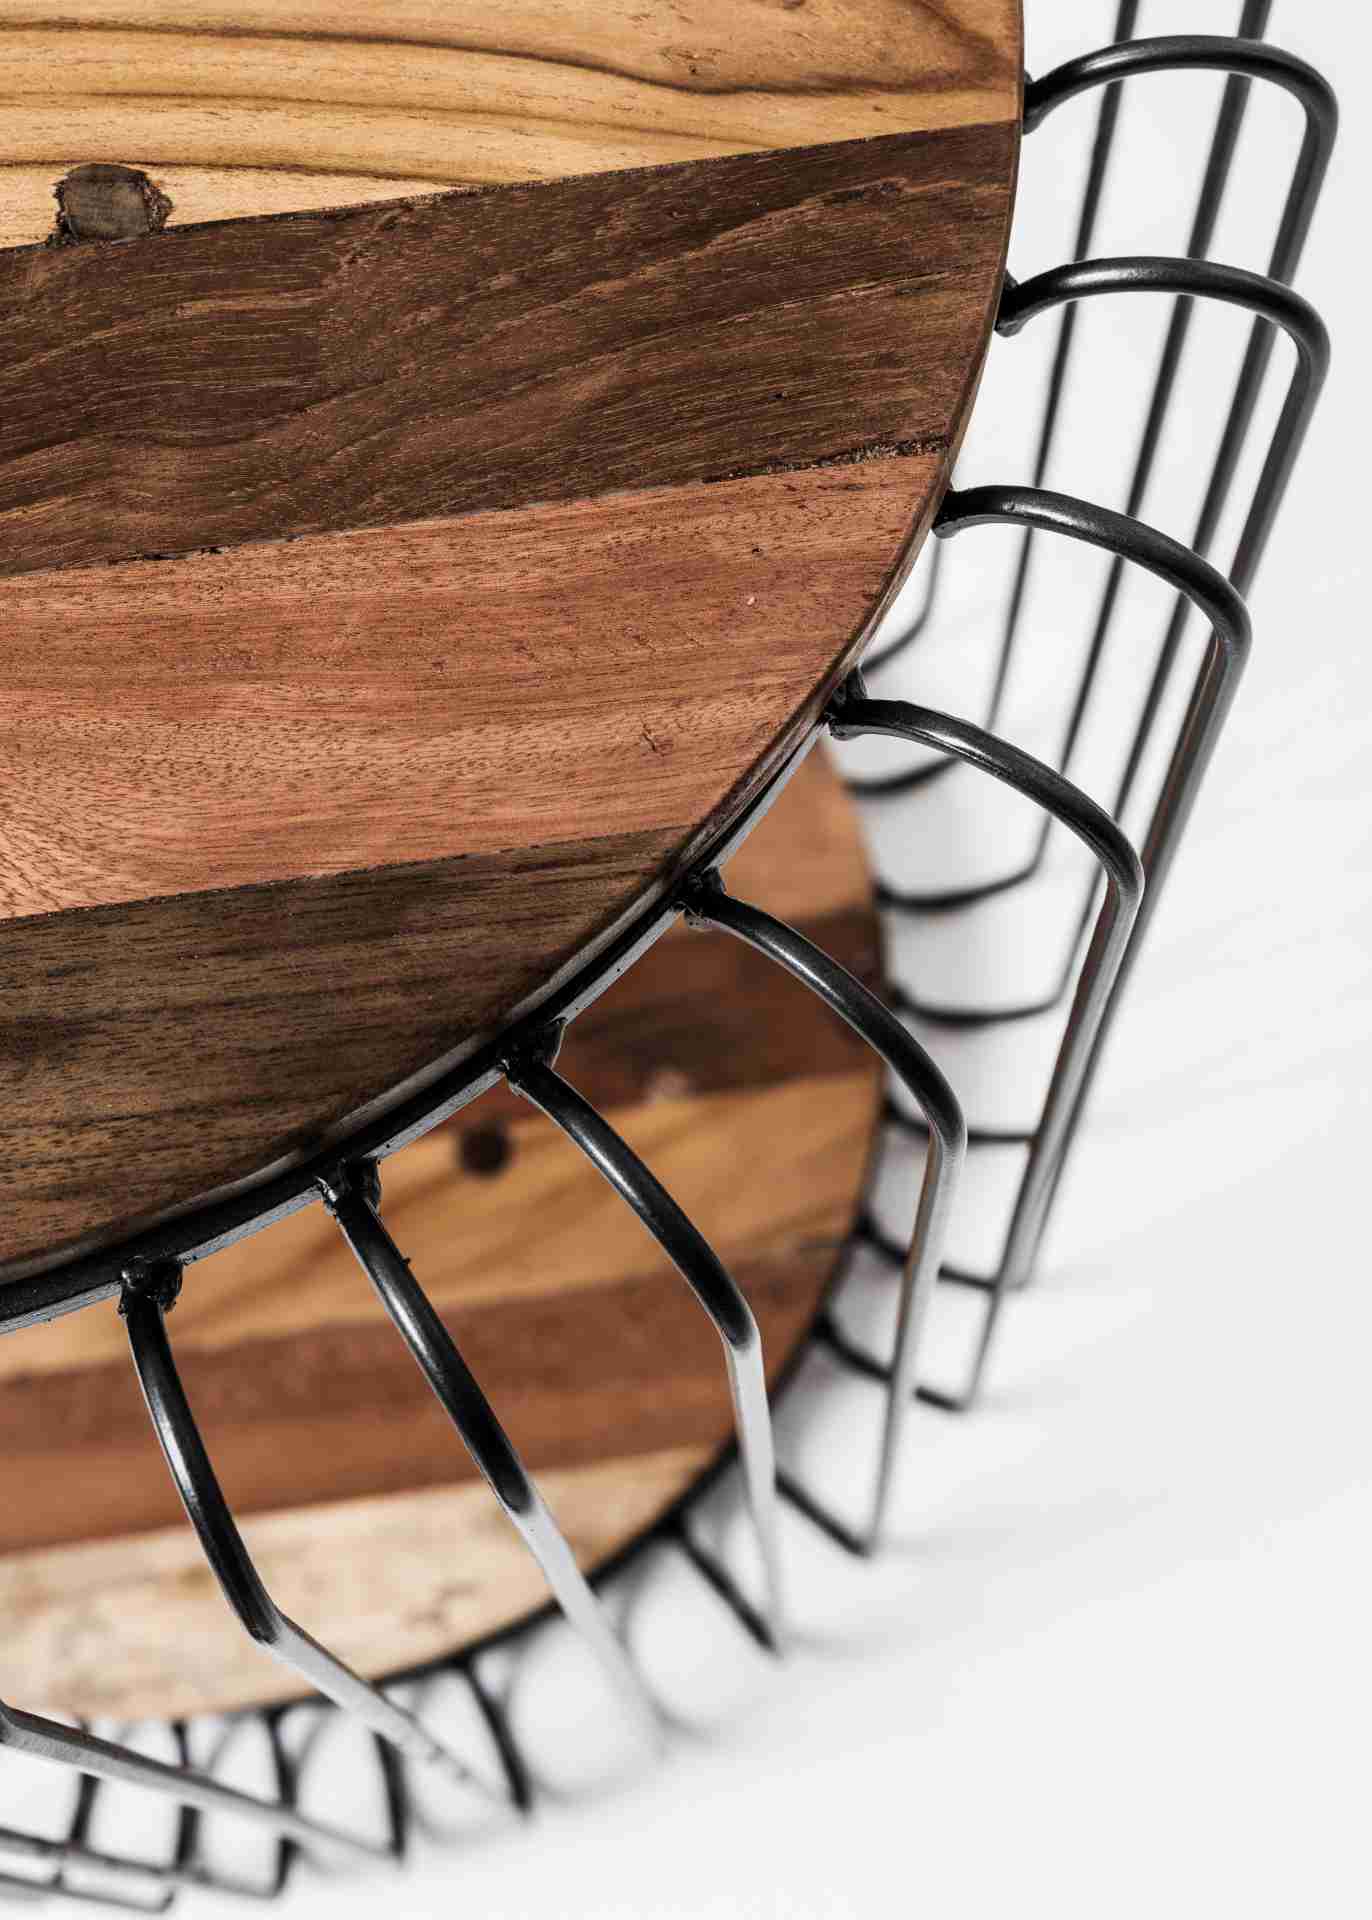 Der Beistelltisch Barca überzeugt mit seinem modernem Design. Gefertigt wurde er aus recyceltem Bootsholz, welches einen natürlichen Farbton besitzt. Das Gestell ist aus Metall und Schwarz. Der Durchmesser des Tisches beträgt 50 cm.